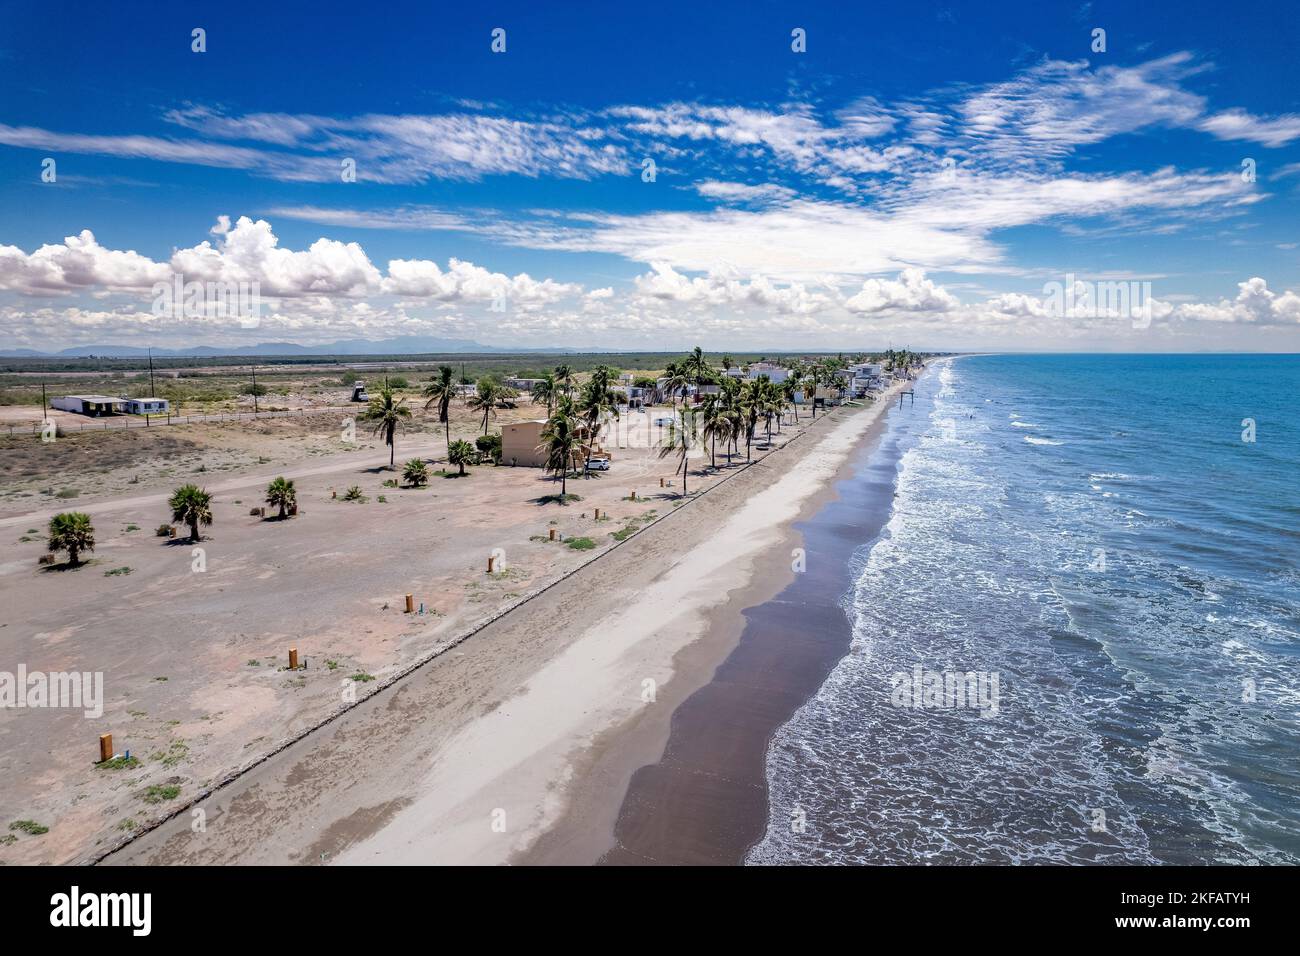 Un'immagine aerea delle palme vicino alla spiaggia sabbiosa con onde schiumose contro un cielo blu Foto Stock